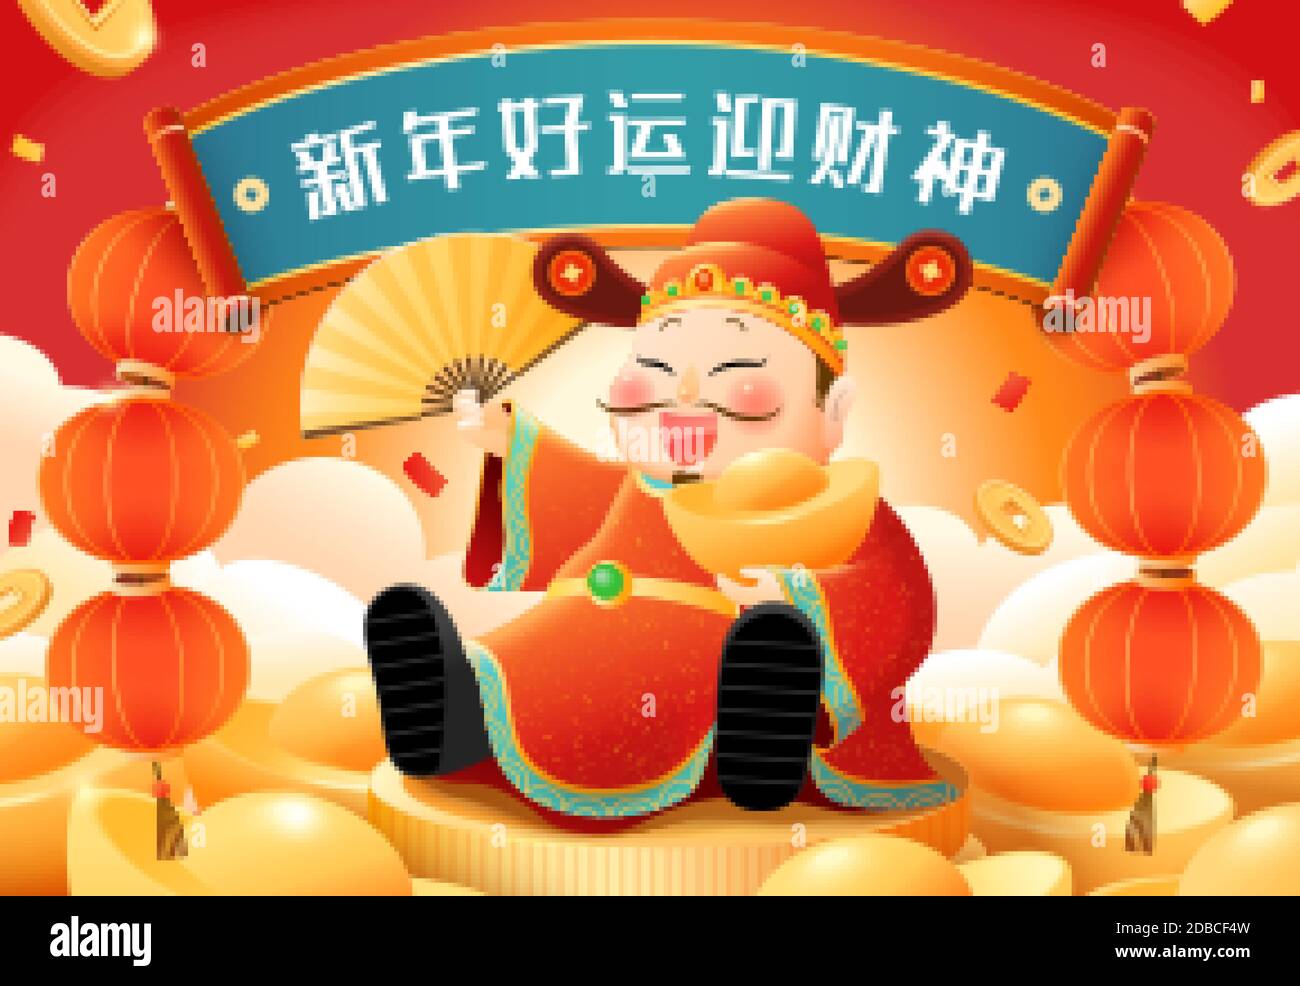 Bannière année lunaire conçue avec une atmosphère heureuse et prospère, traduction chinoise: Accueillir Dieu de la richesse, de bonnes fortunes Illustration de Vecteur